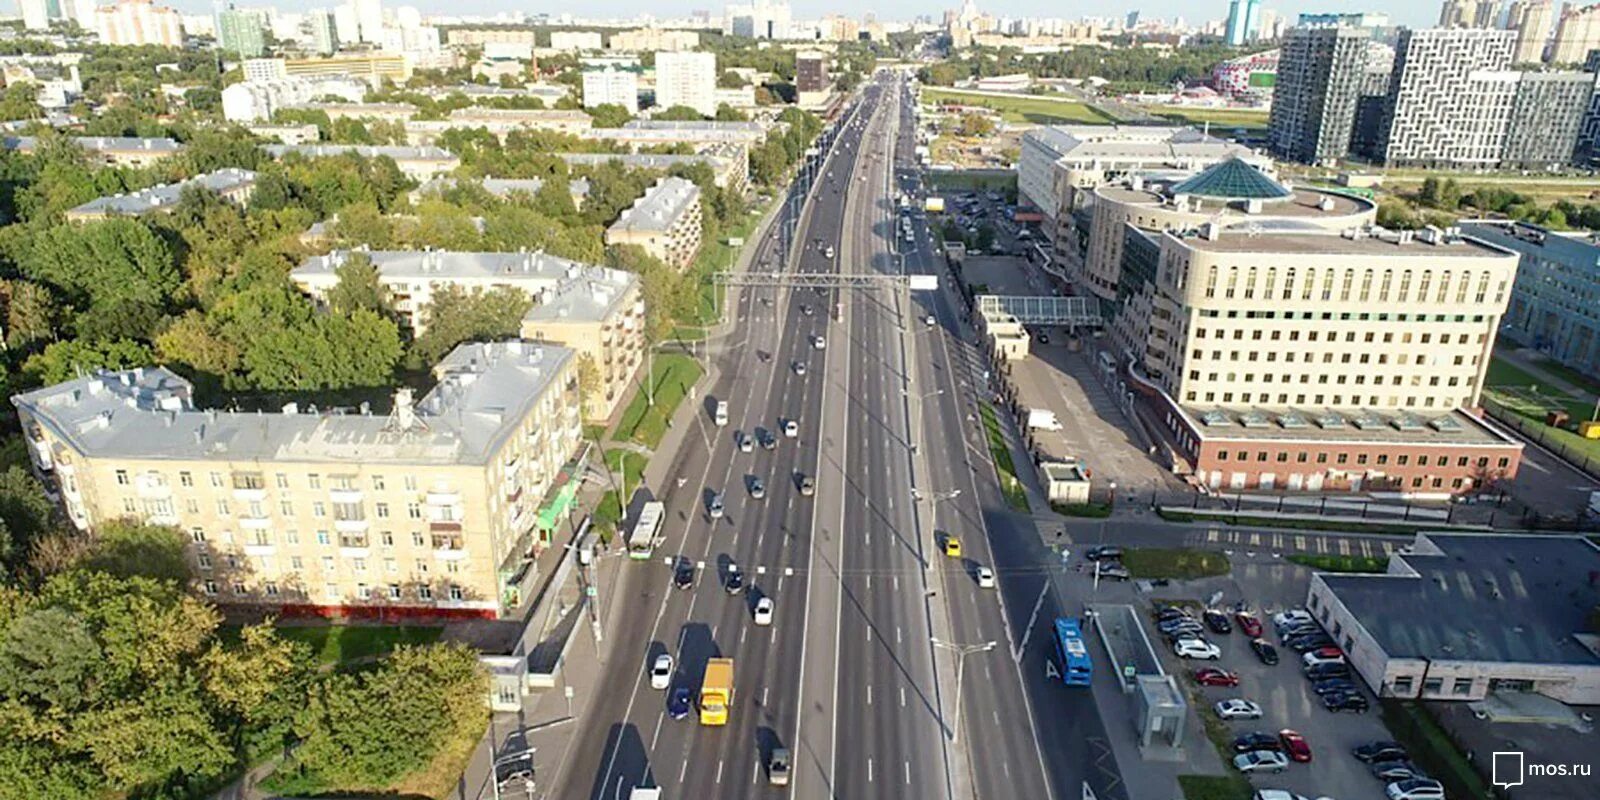 Волоколамка 1 сайт. Волоколамское шоссе. Волоколамское шоссе панорама. Москва на Волоколамском шоссе. Волоколамское шоссе 75 сверху.